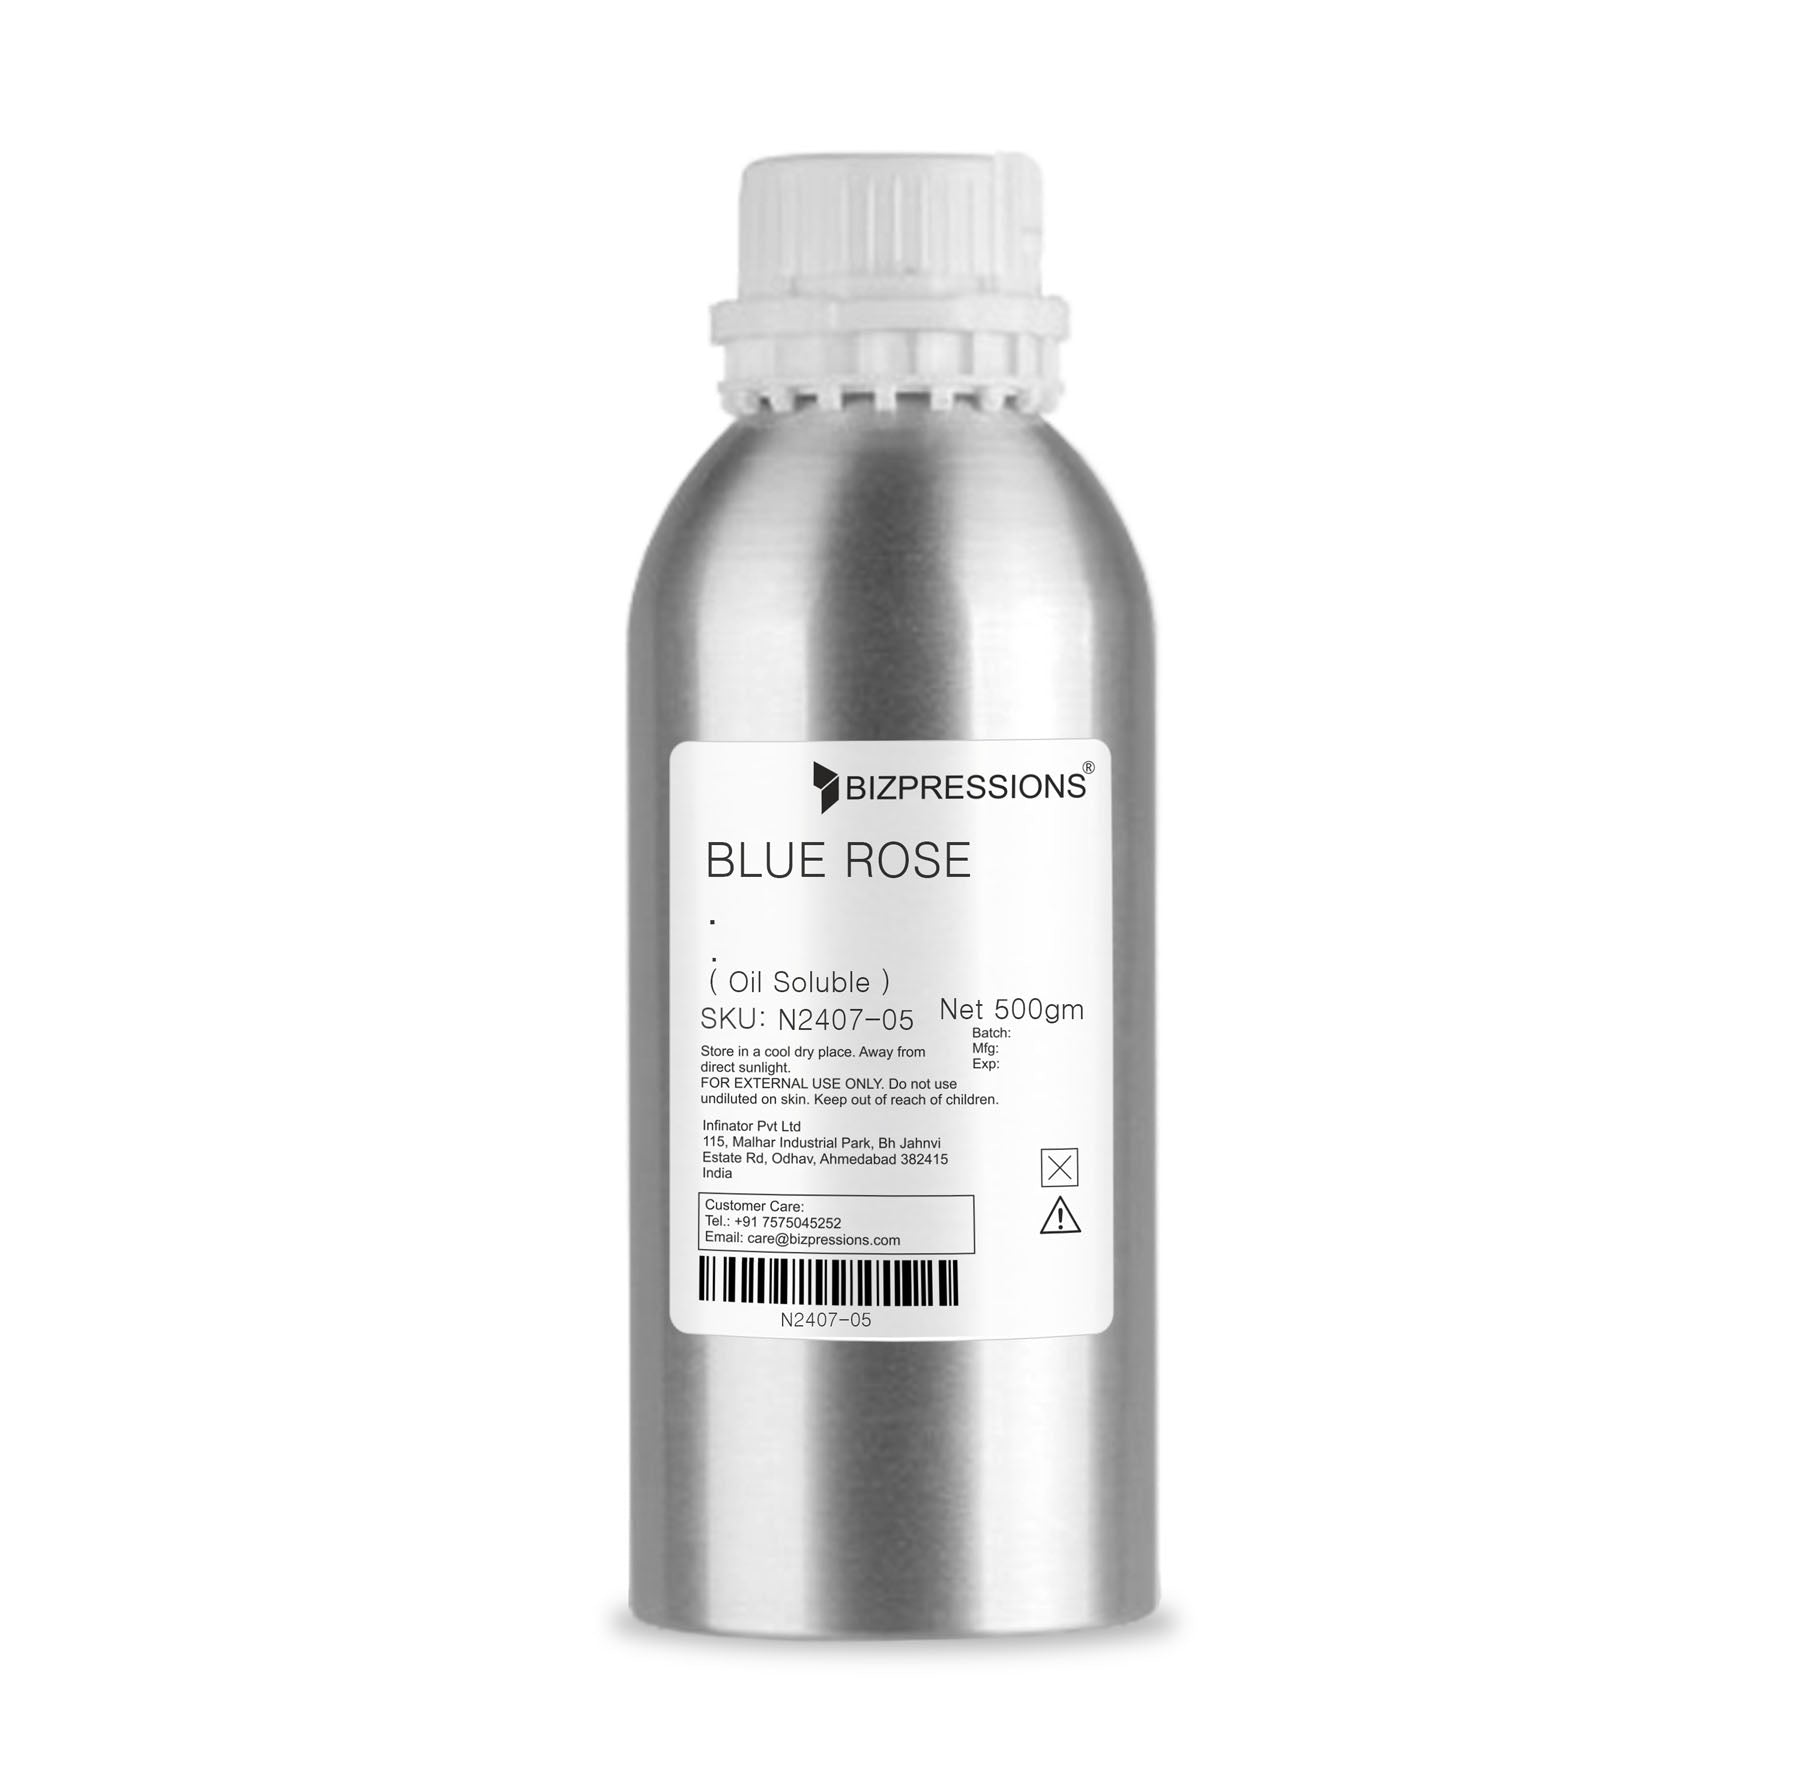 BLUE ROSE - Fragrance ( Oil Soluble ) - 500 gm